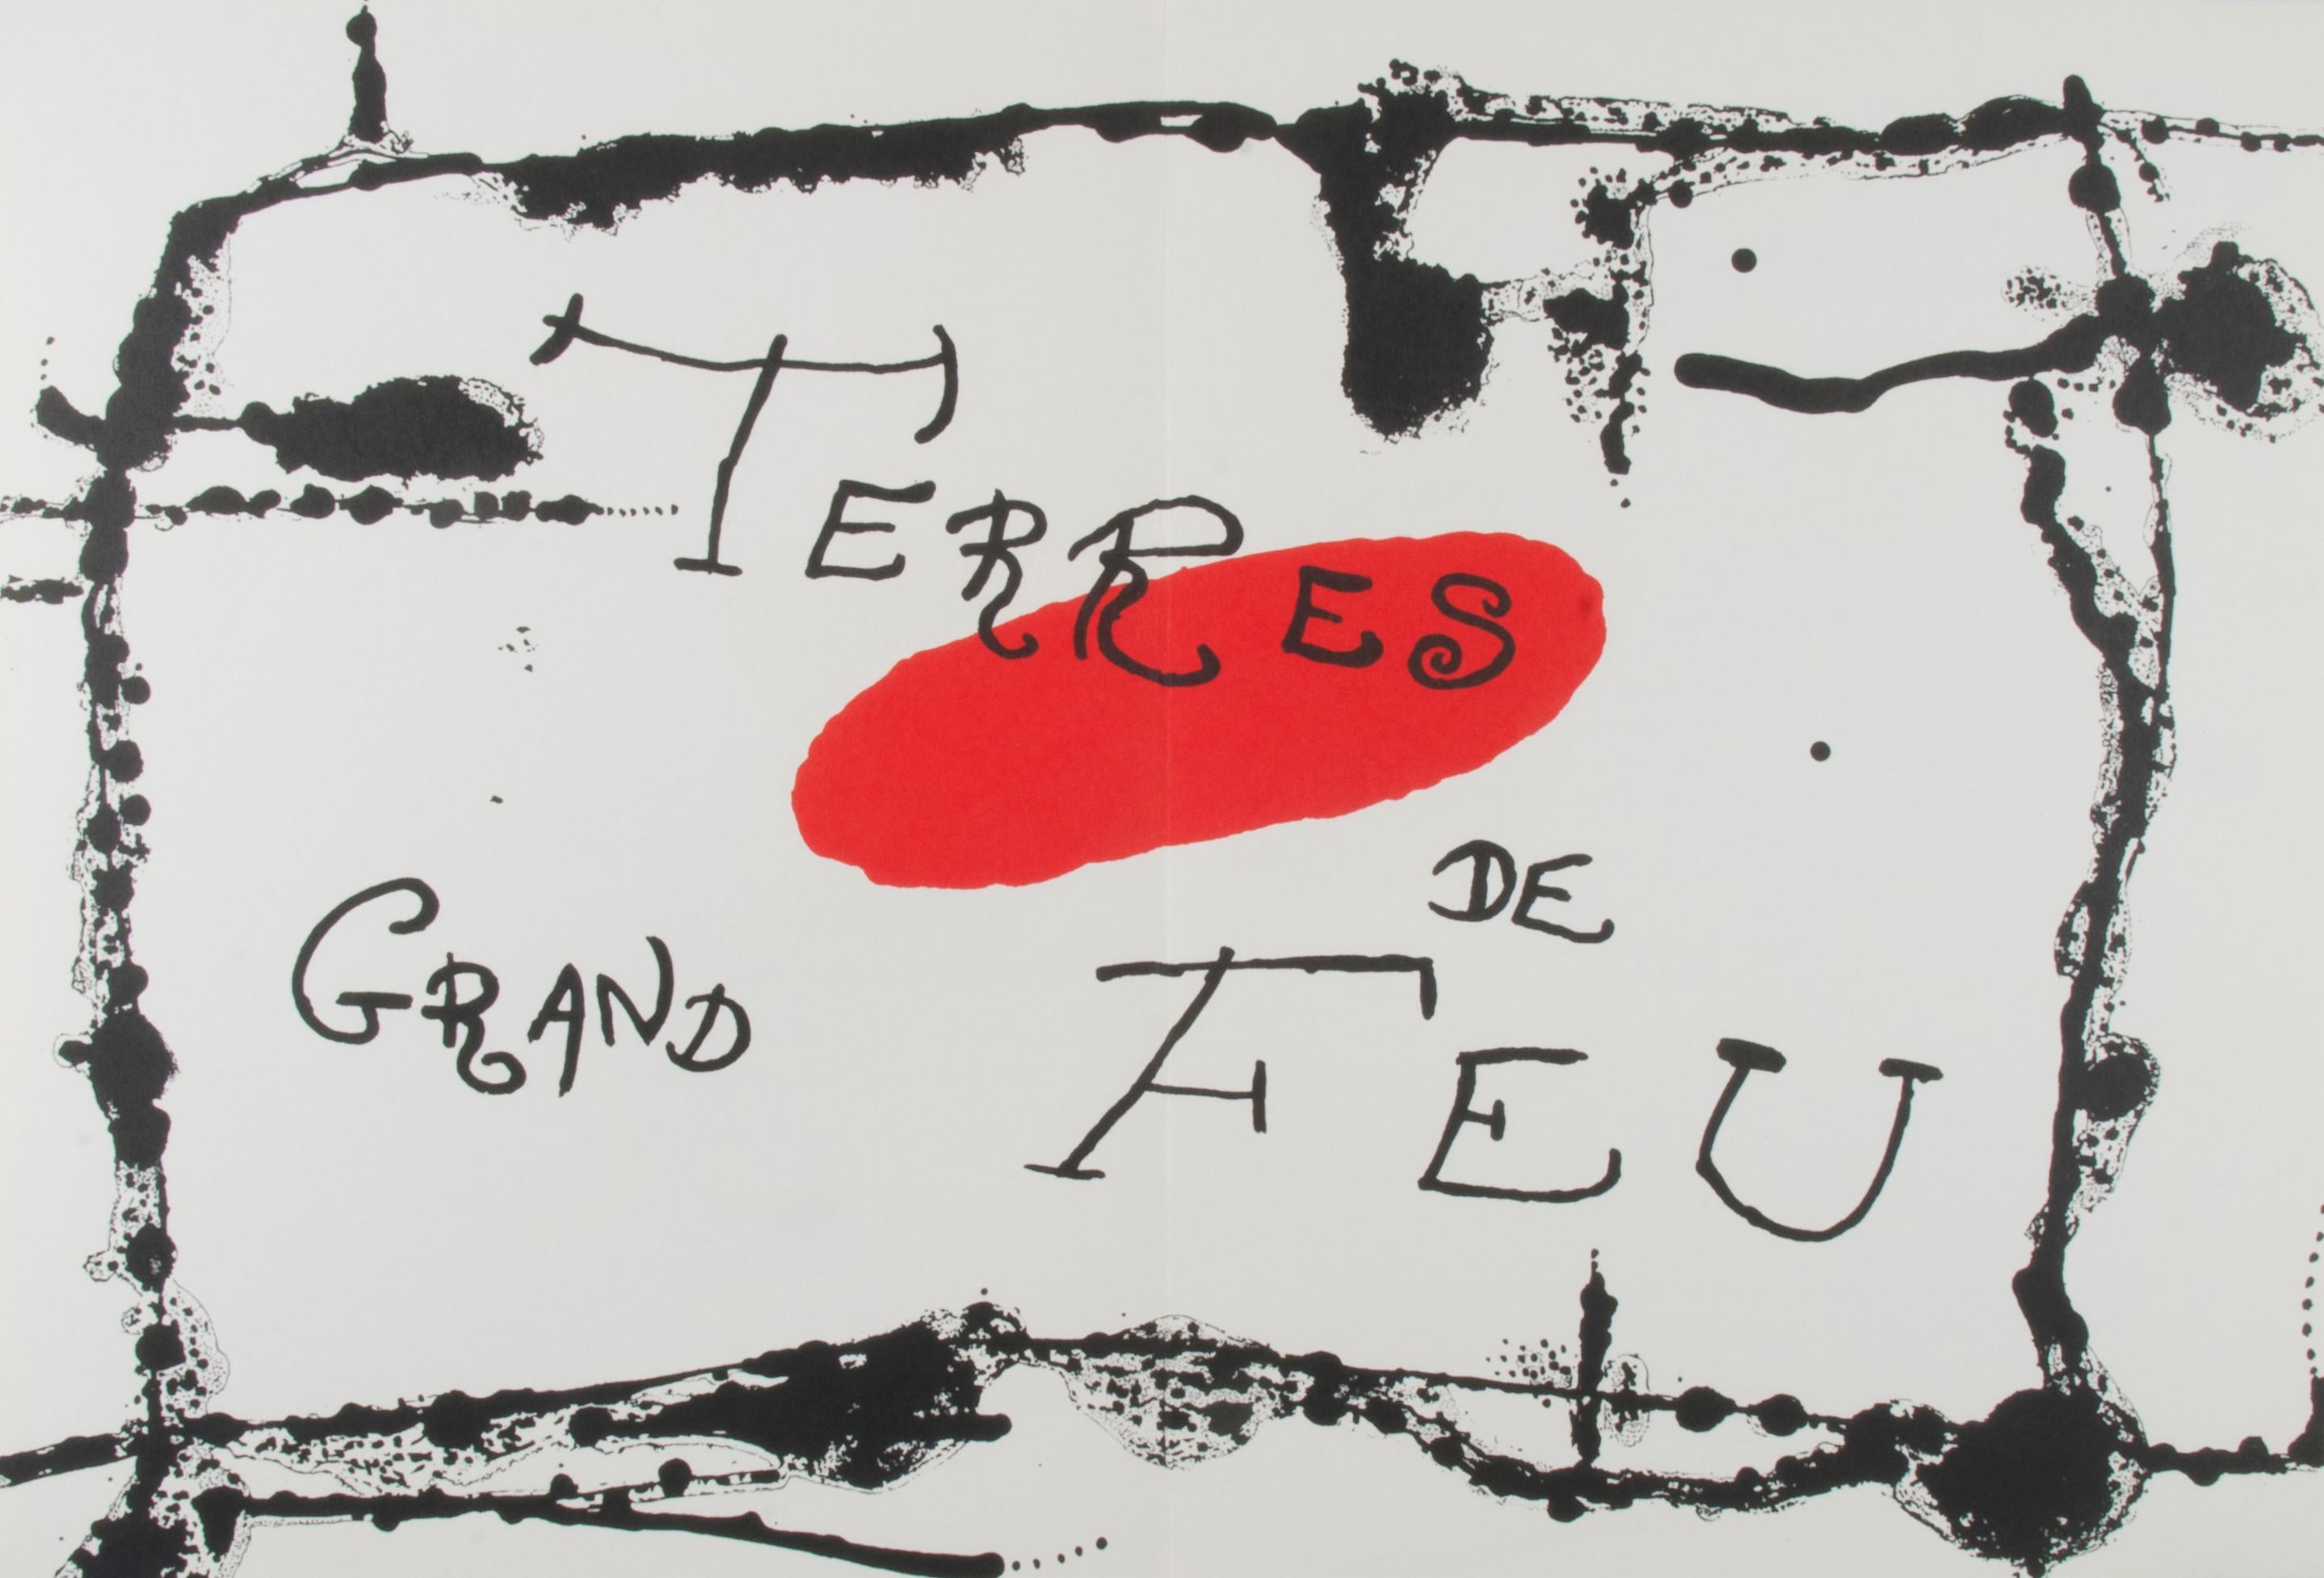 Joan Miró Abstract Print - Terres de Grand Feu, (Land of Great Fire)